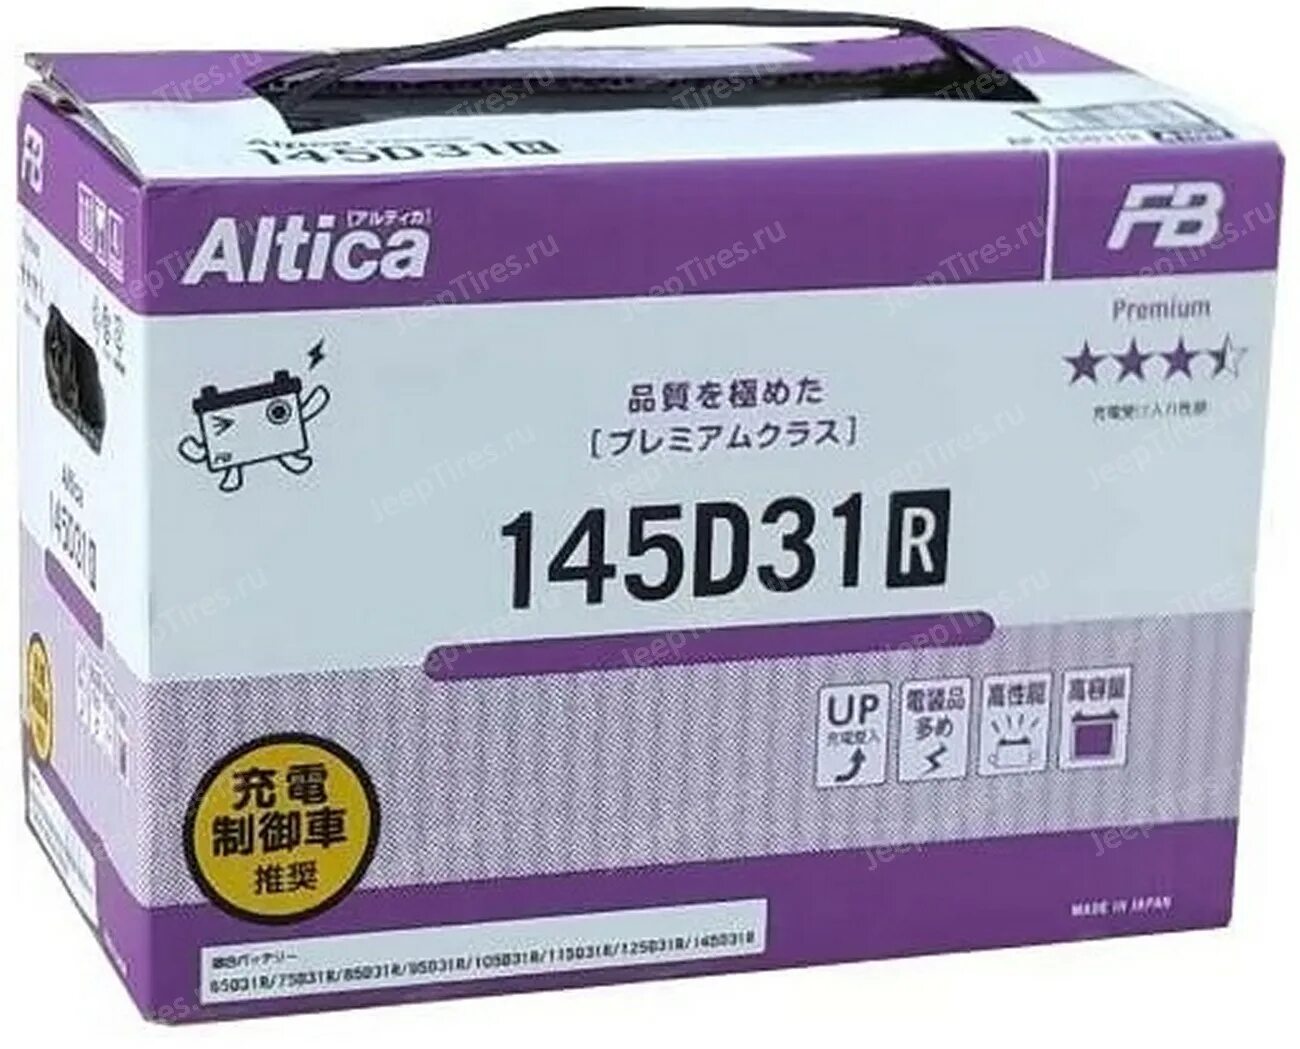 Fb Altica Premium 145d31r. Аккумулятор fb Altica Premium 98 Ah, 145d31r. Furukawa Battery ln2 (din 65). 145d31l Furukawa. Furukawa battery altica